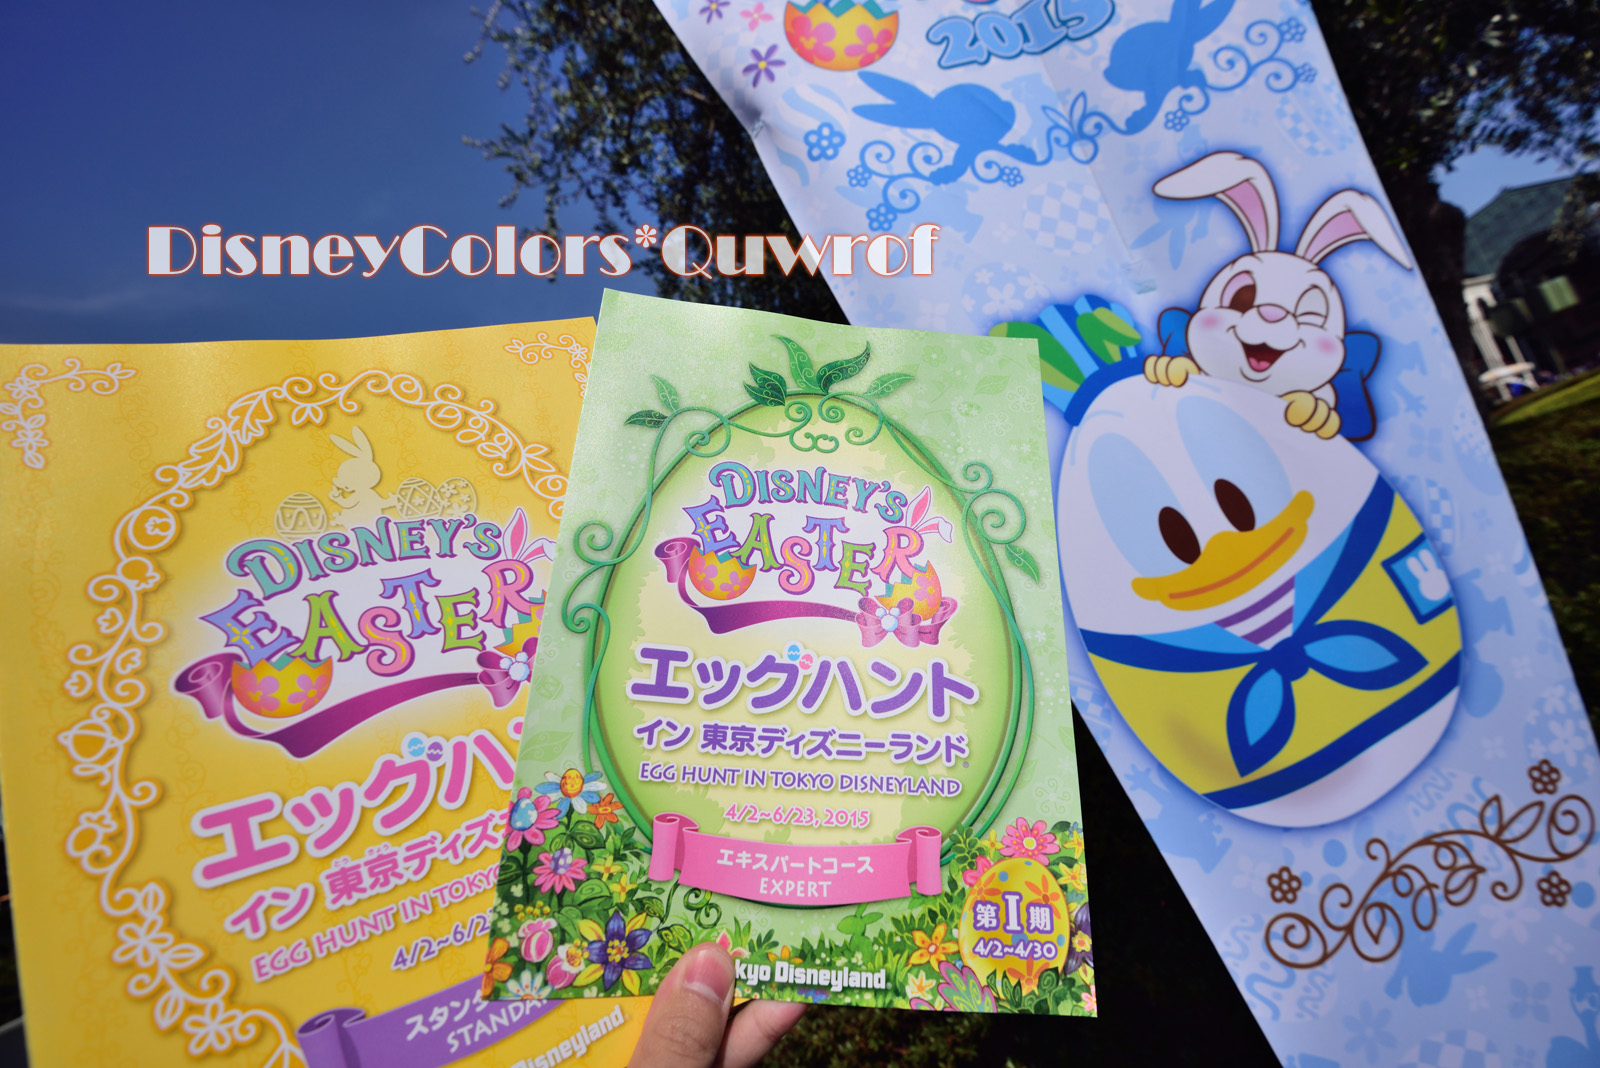 エッグハントに挑むにんじんジャージ軍団 2015年4月12日 東京ディズニーランドのインレポ Disney Colors Blog